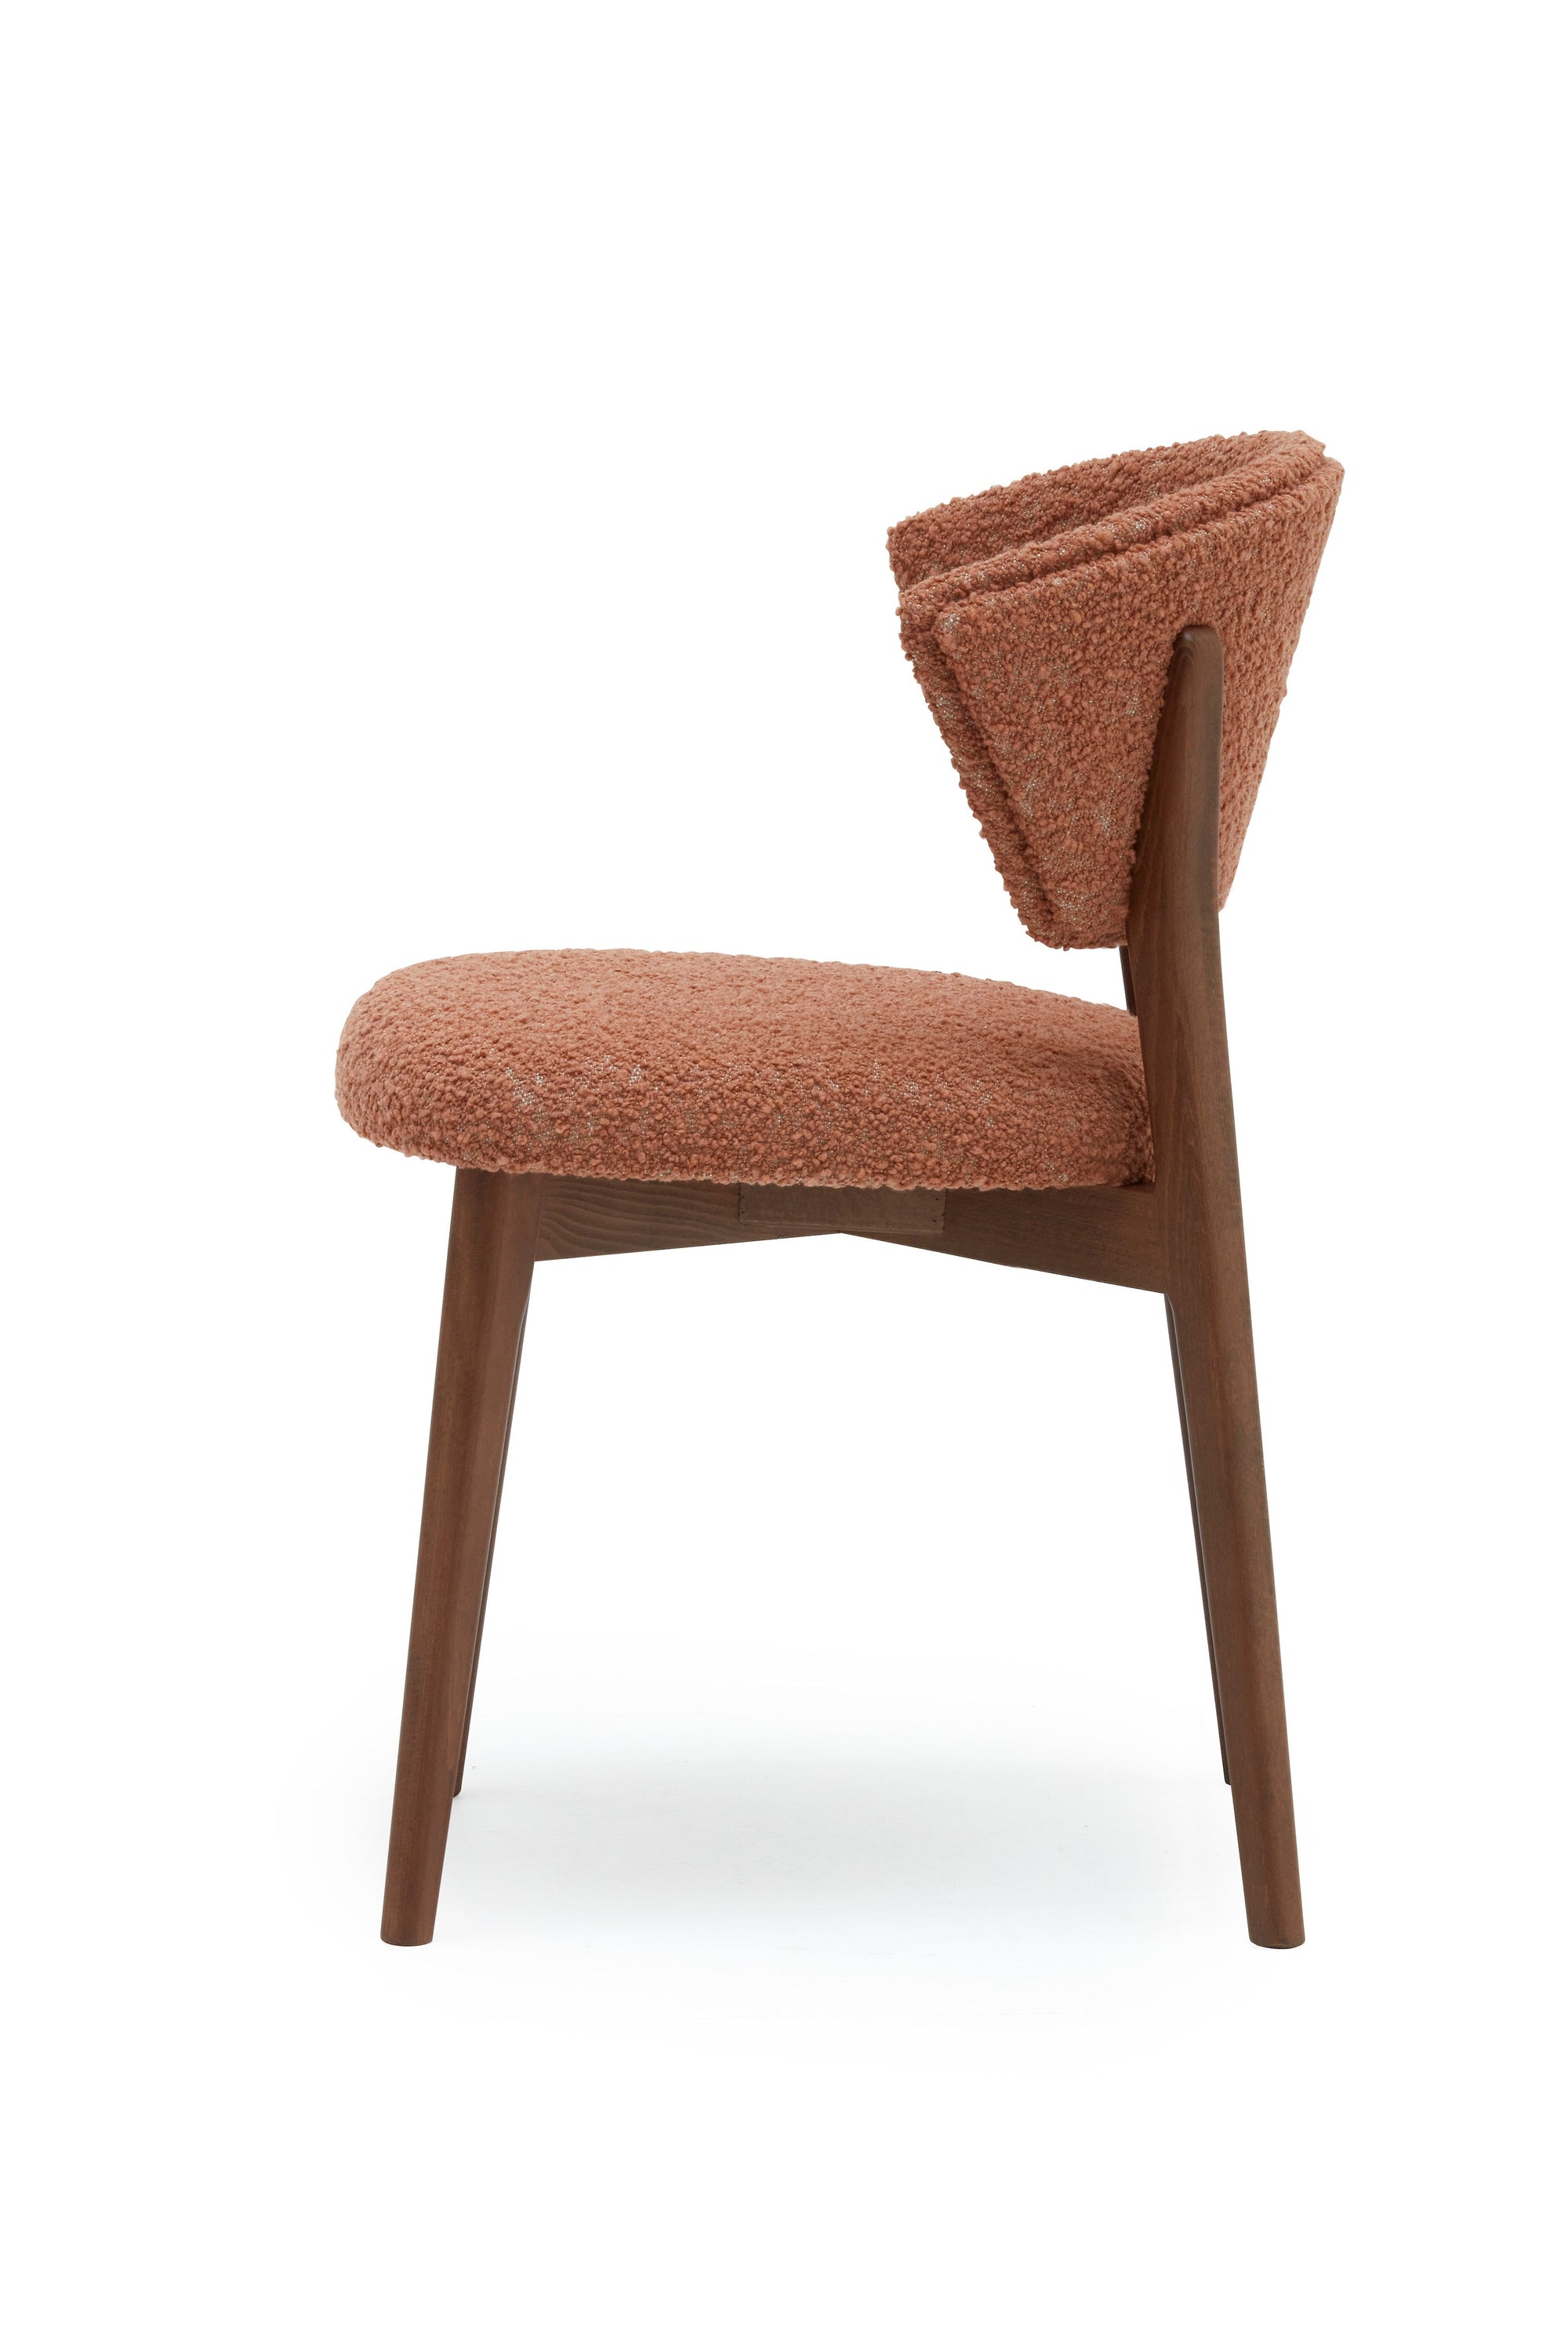 Stella 821 Side Chair-Billiani-Contract Furniture Store